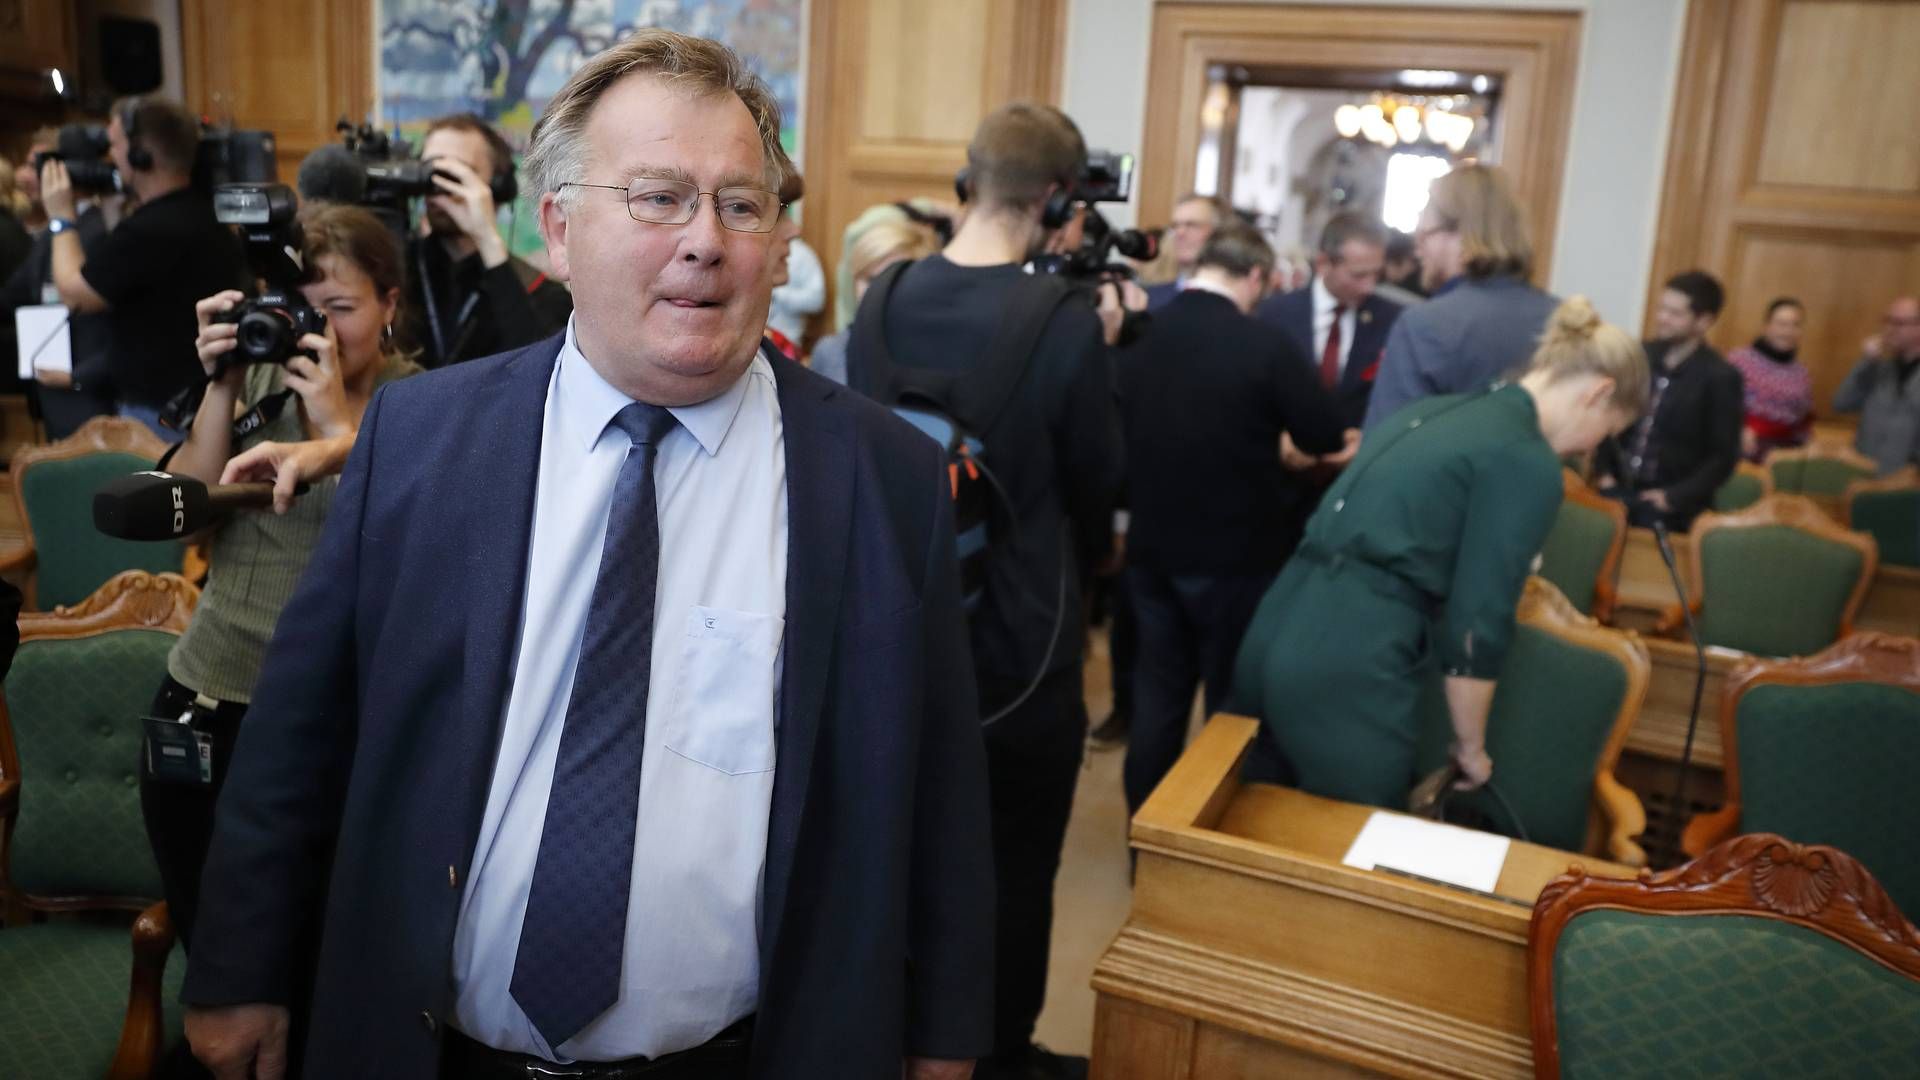 Det er endnu uafklaret, om Claus Hjort Frederiksen bliver tiltalt efter et valg, når han ikke længere har parlamentarisk immunitet. | Foto: Jens Dresling